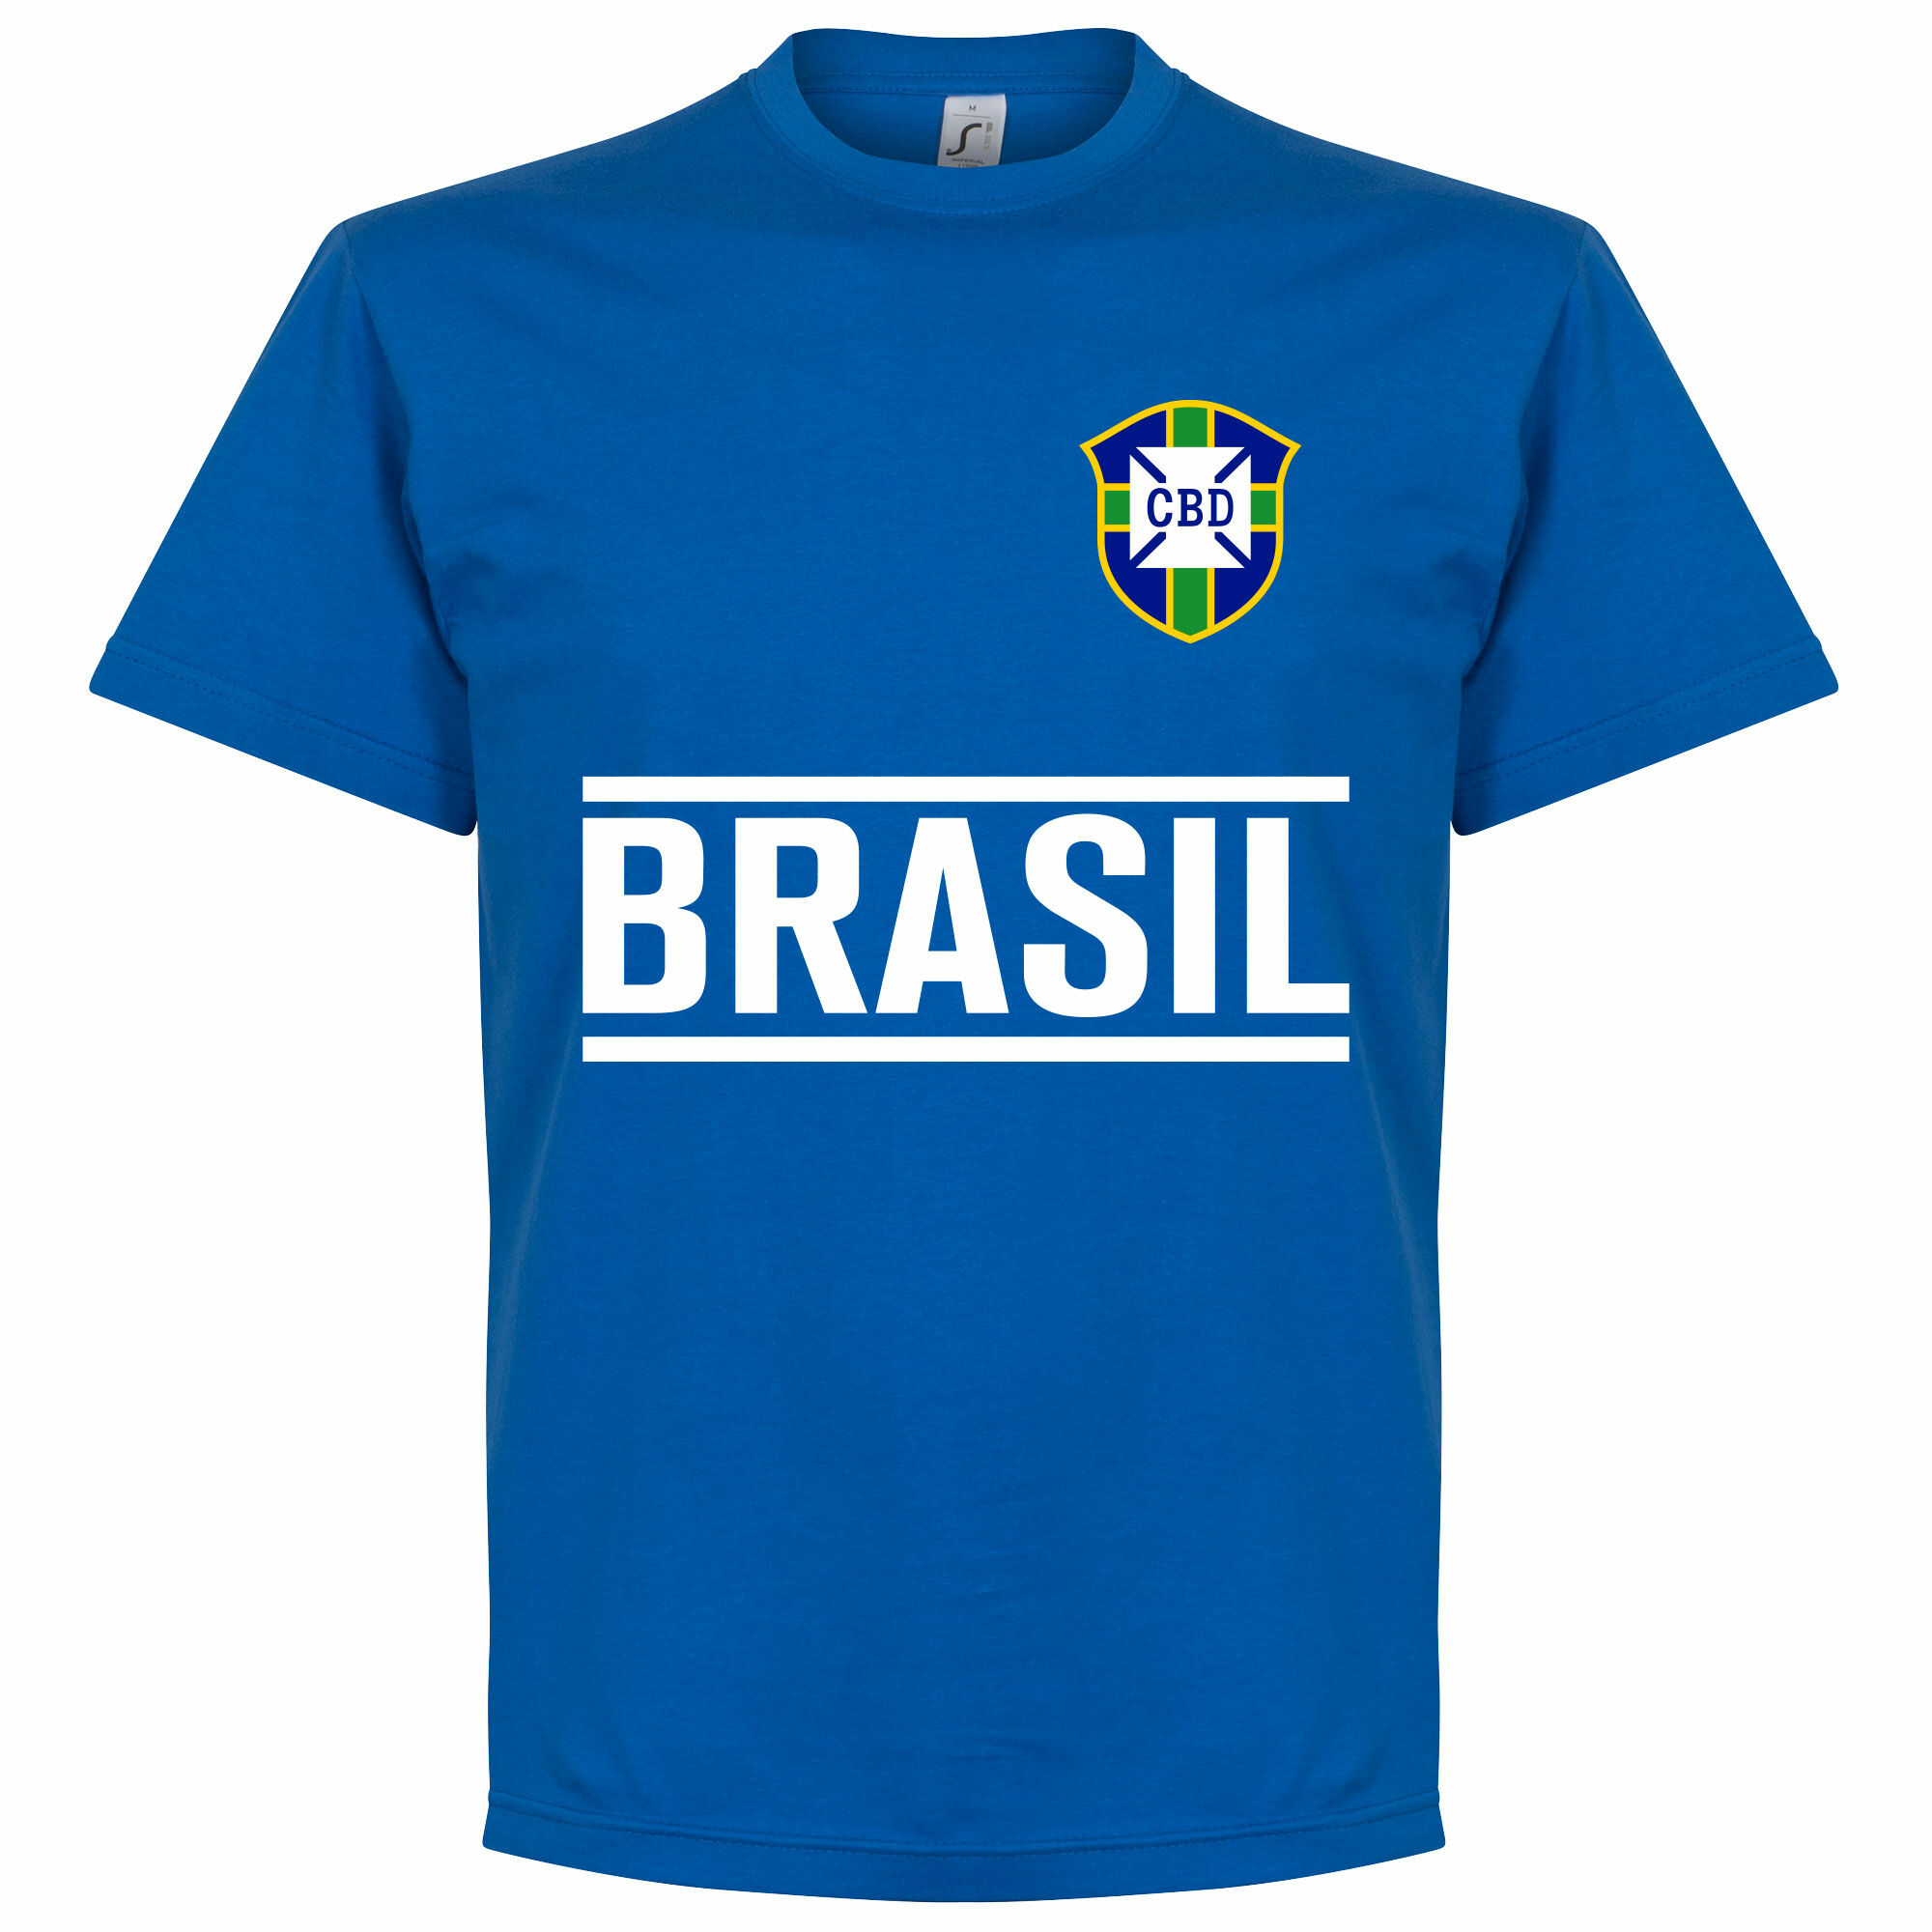 Brazílie - Tričko dětské - modré